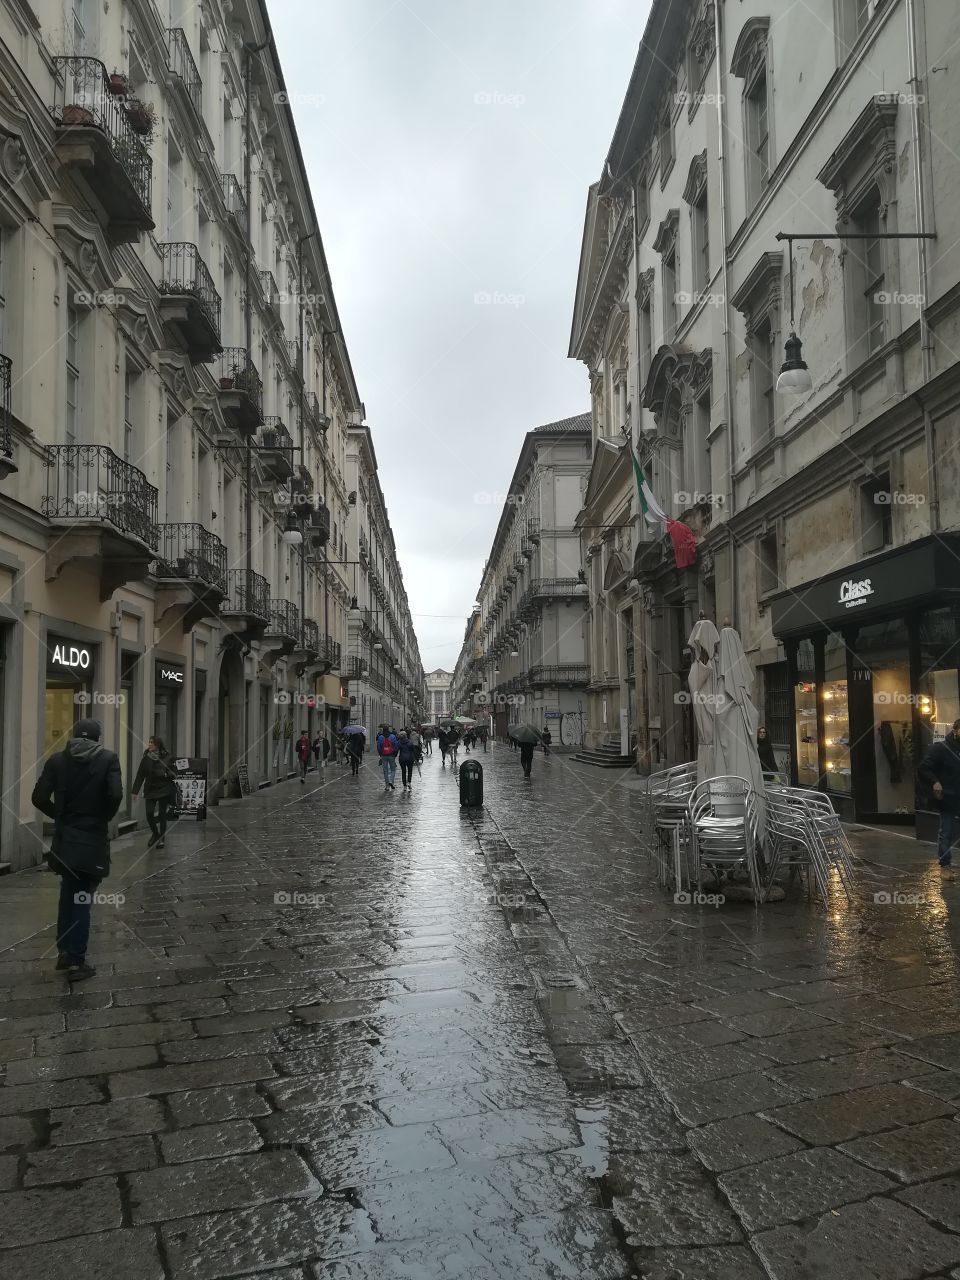 Torino,Italy